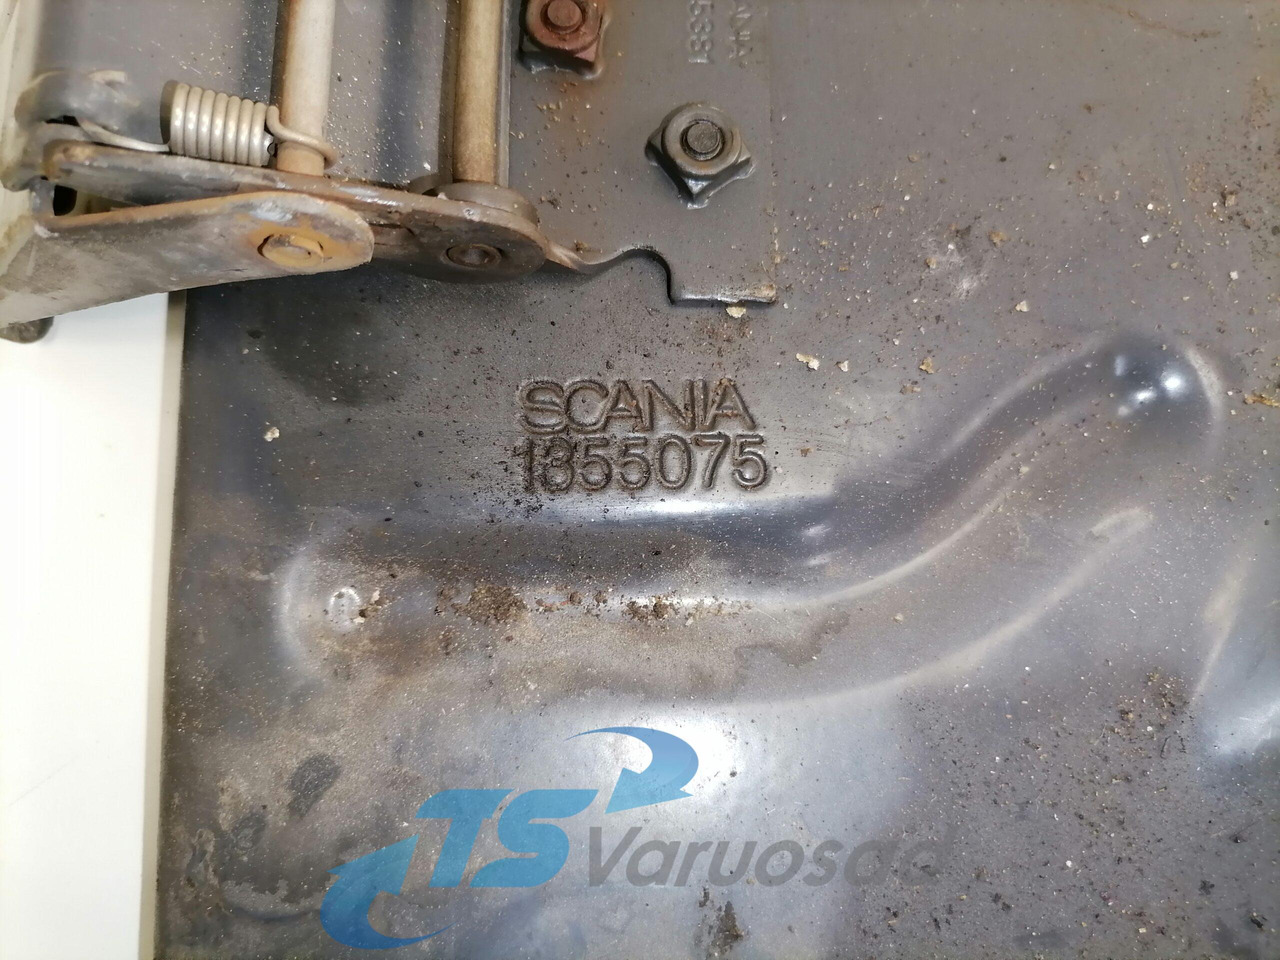 قطع غيار عامة - شاحنة Scania Mudguard bracket 1355075: صور 4